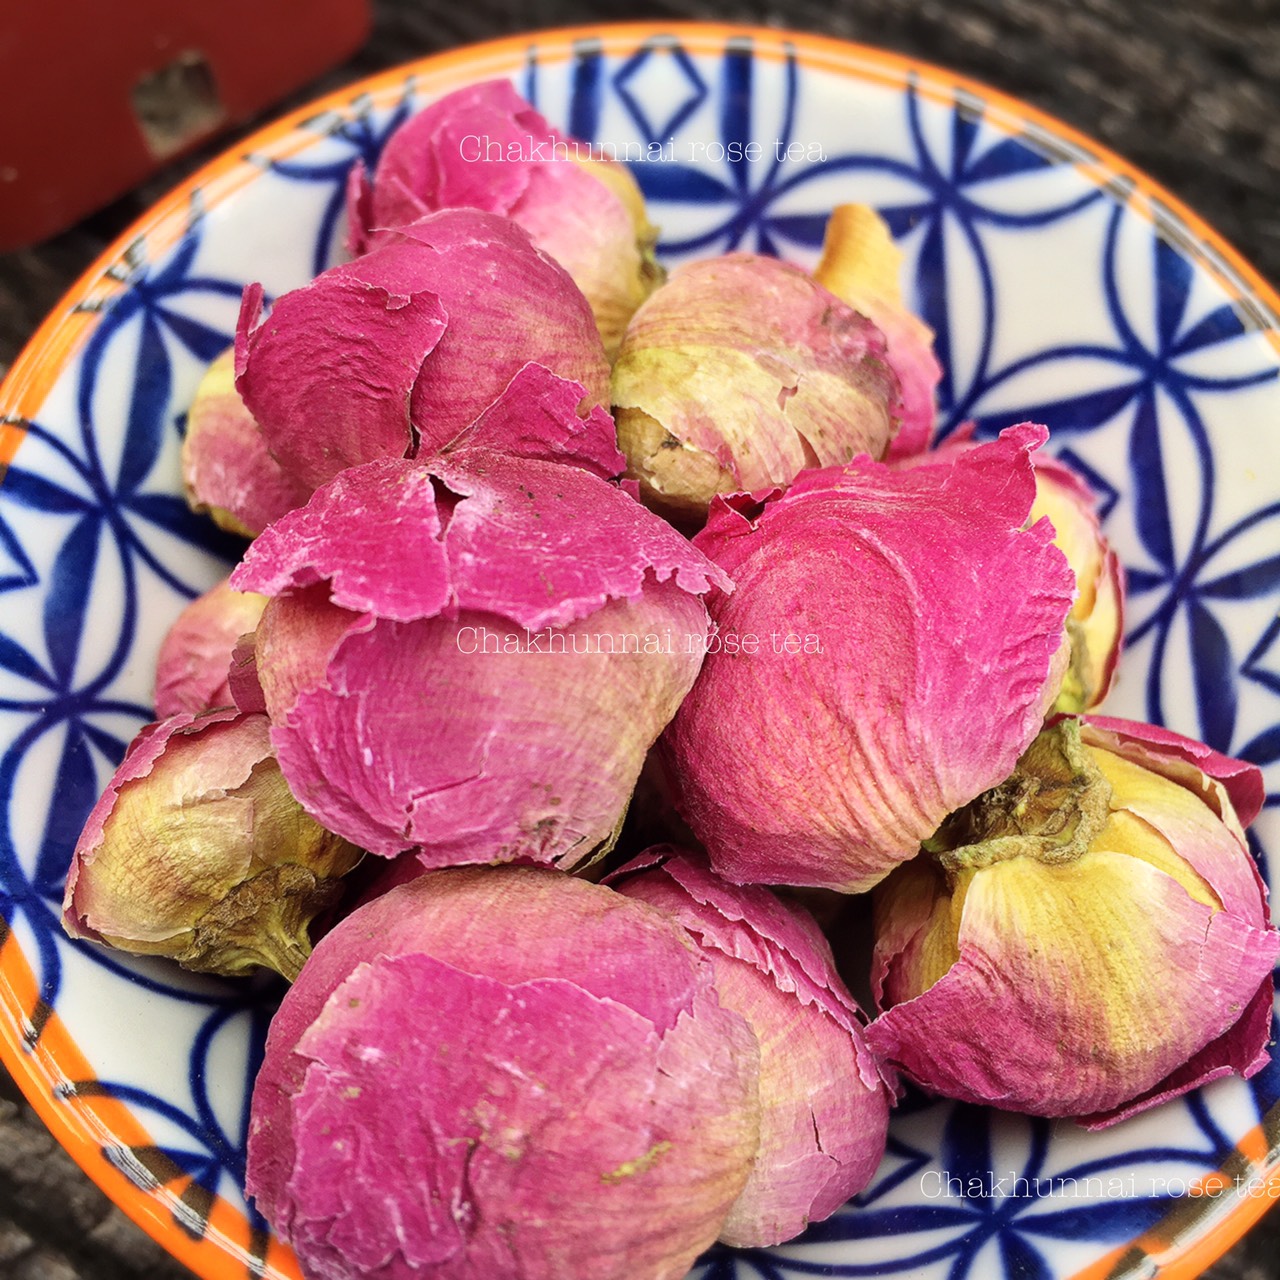 ชาดอกโบตั๋น ดอกไม้สีชมพูโบตั๋น ชาเพื่อสุขภาพ